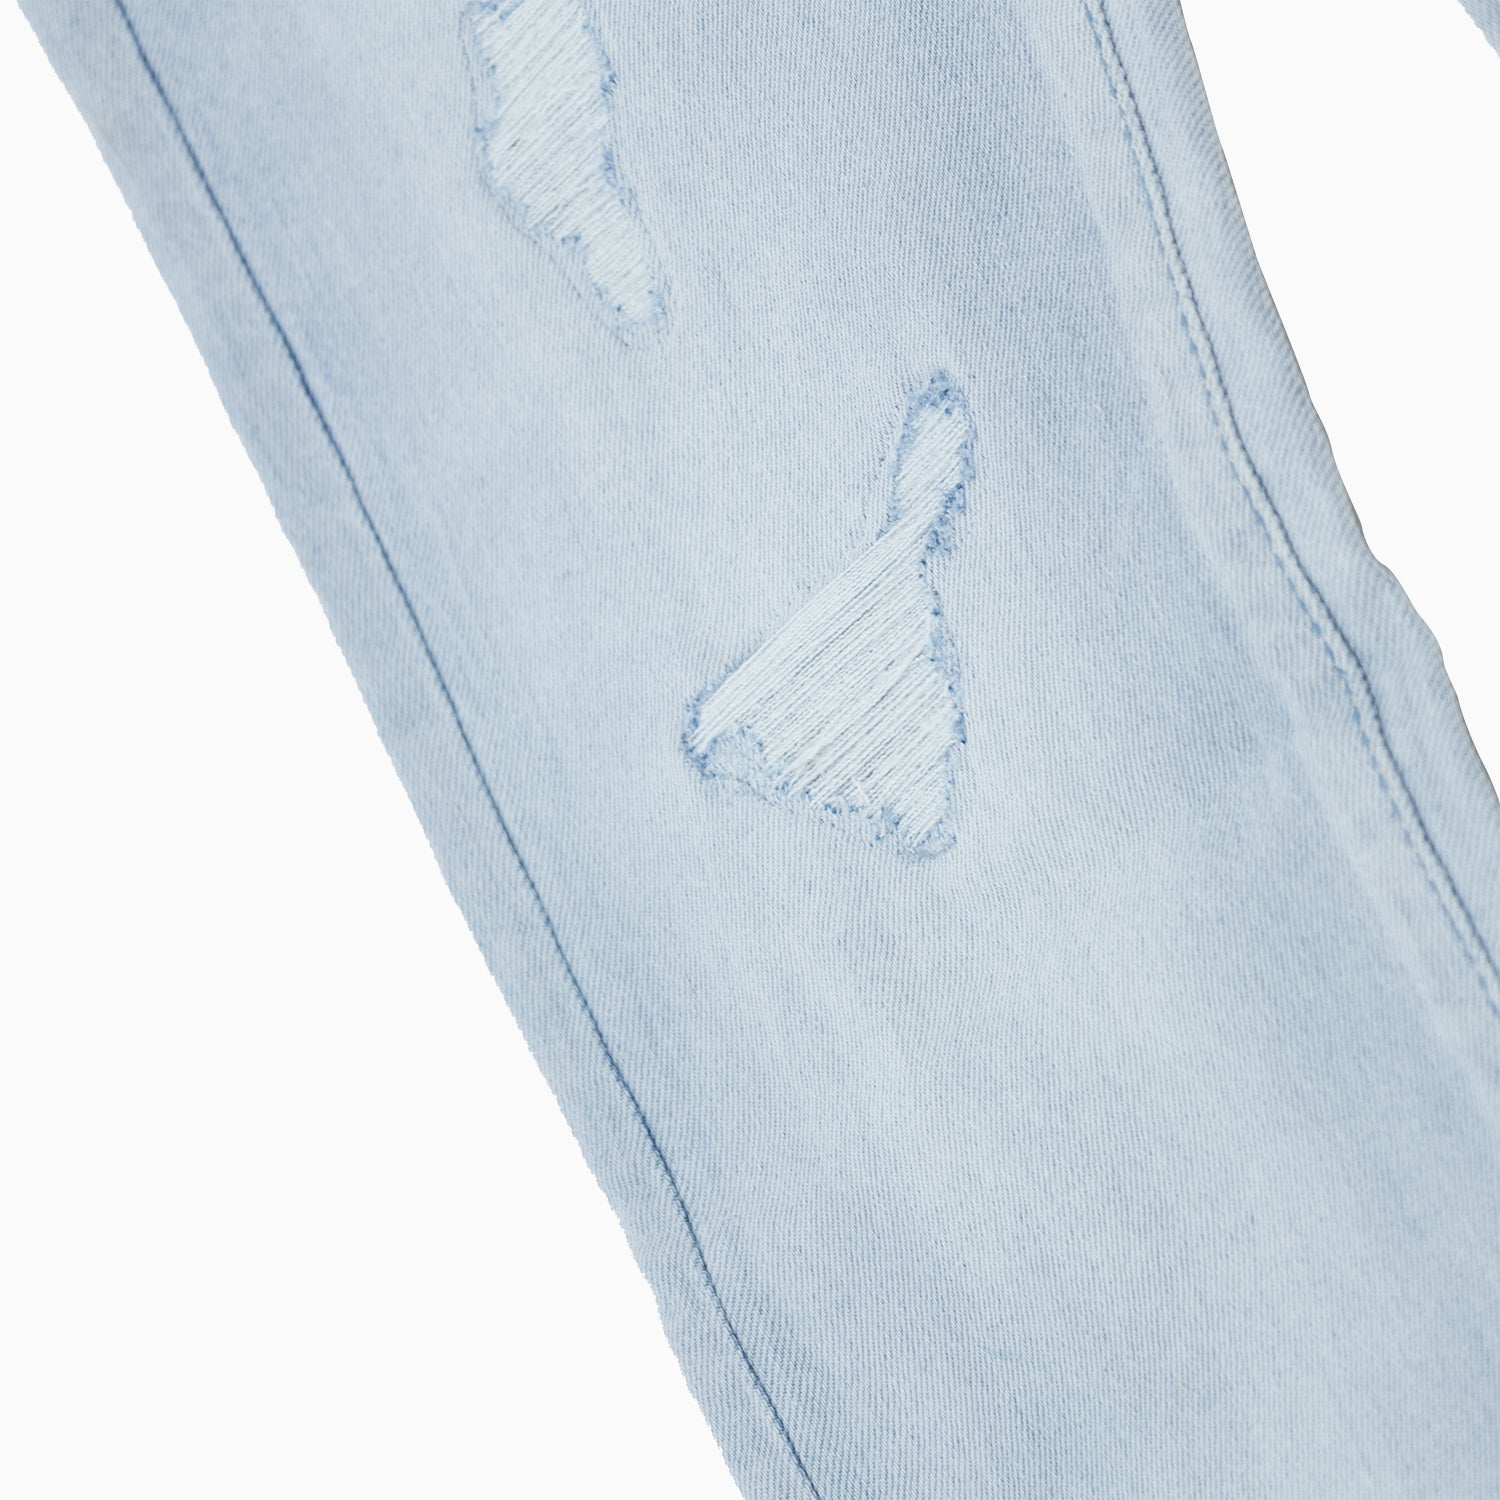 mens-savar-ice-blue-slim-denim-ripped-jeans-pant-sjr0331-iceblu